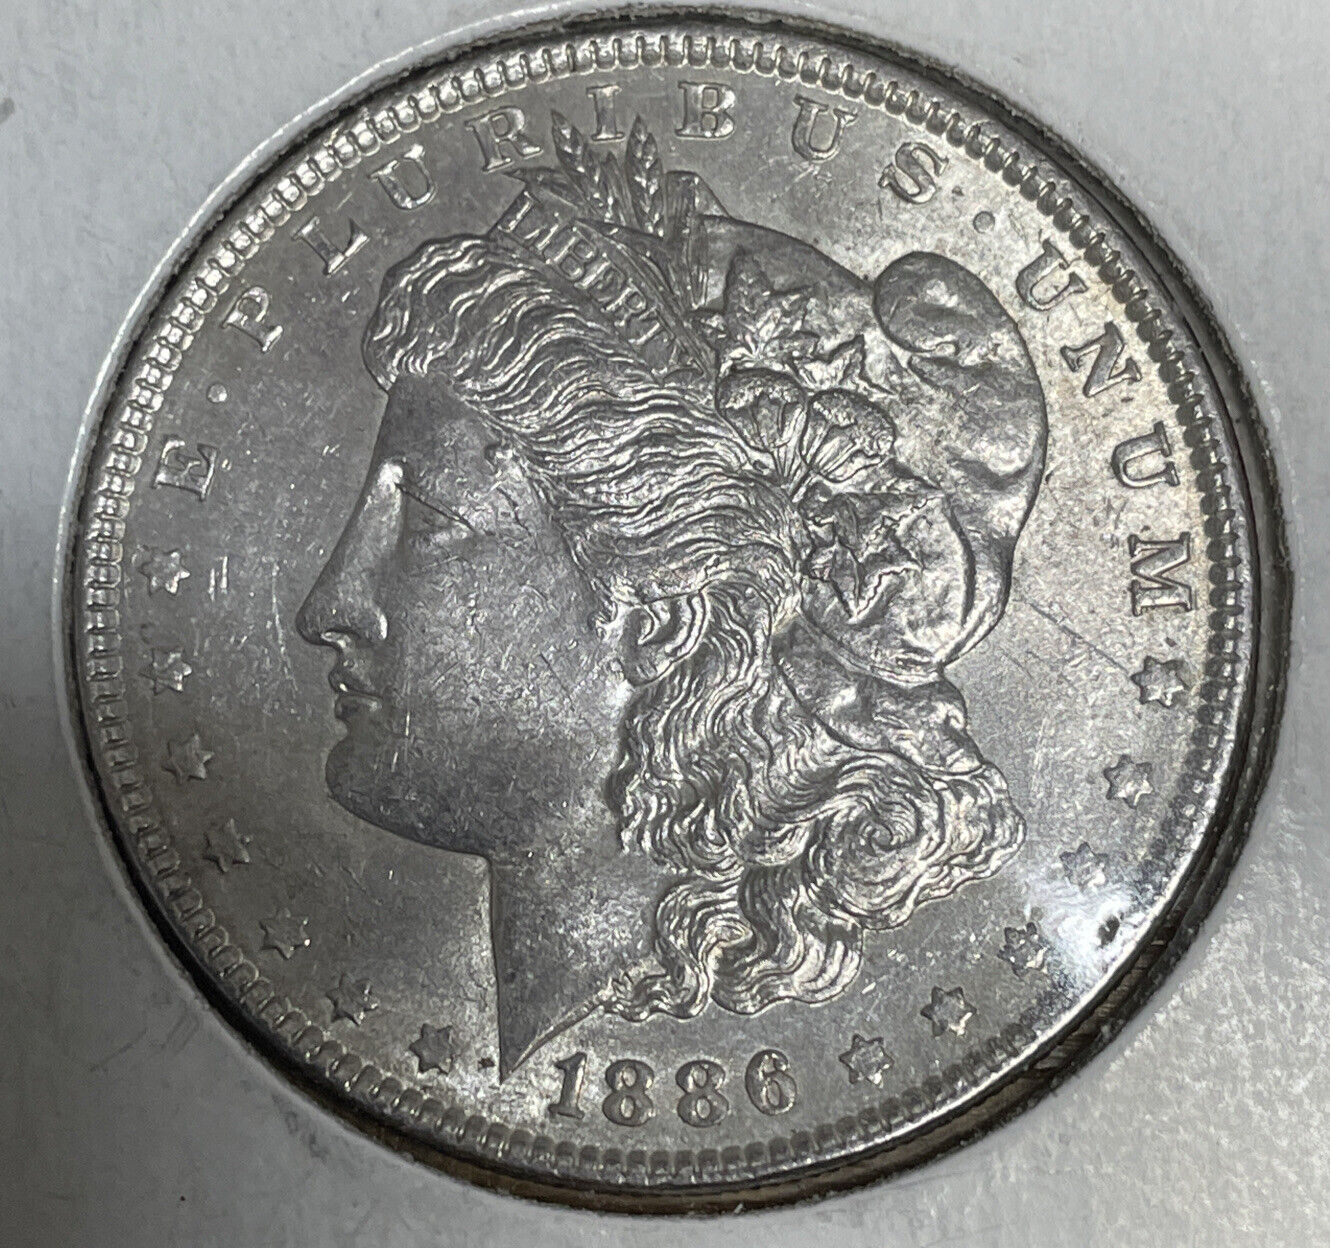 1886 BU Morgan Silver Dollar nice features